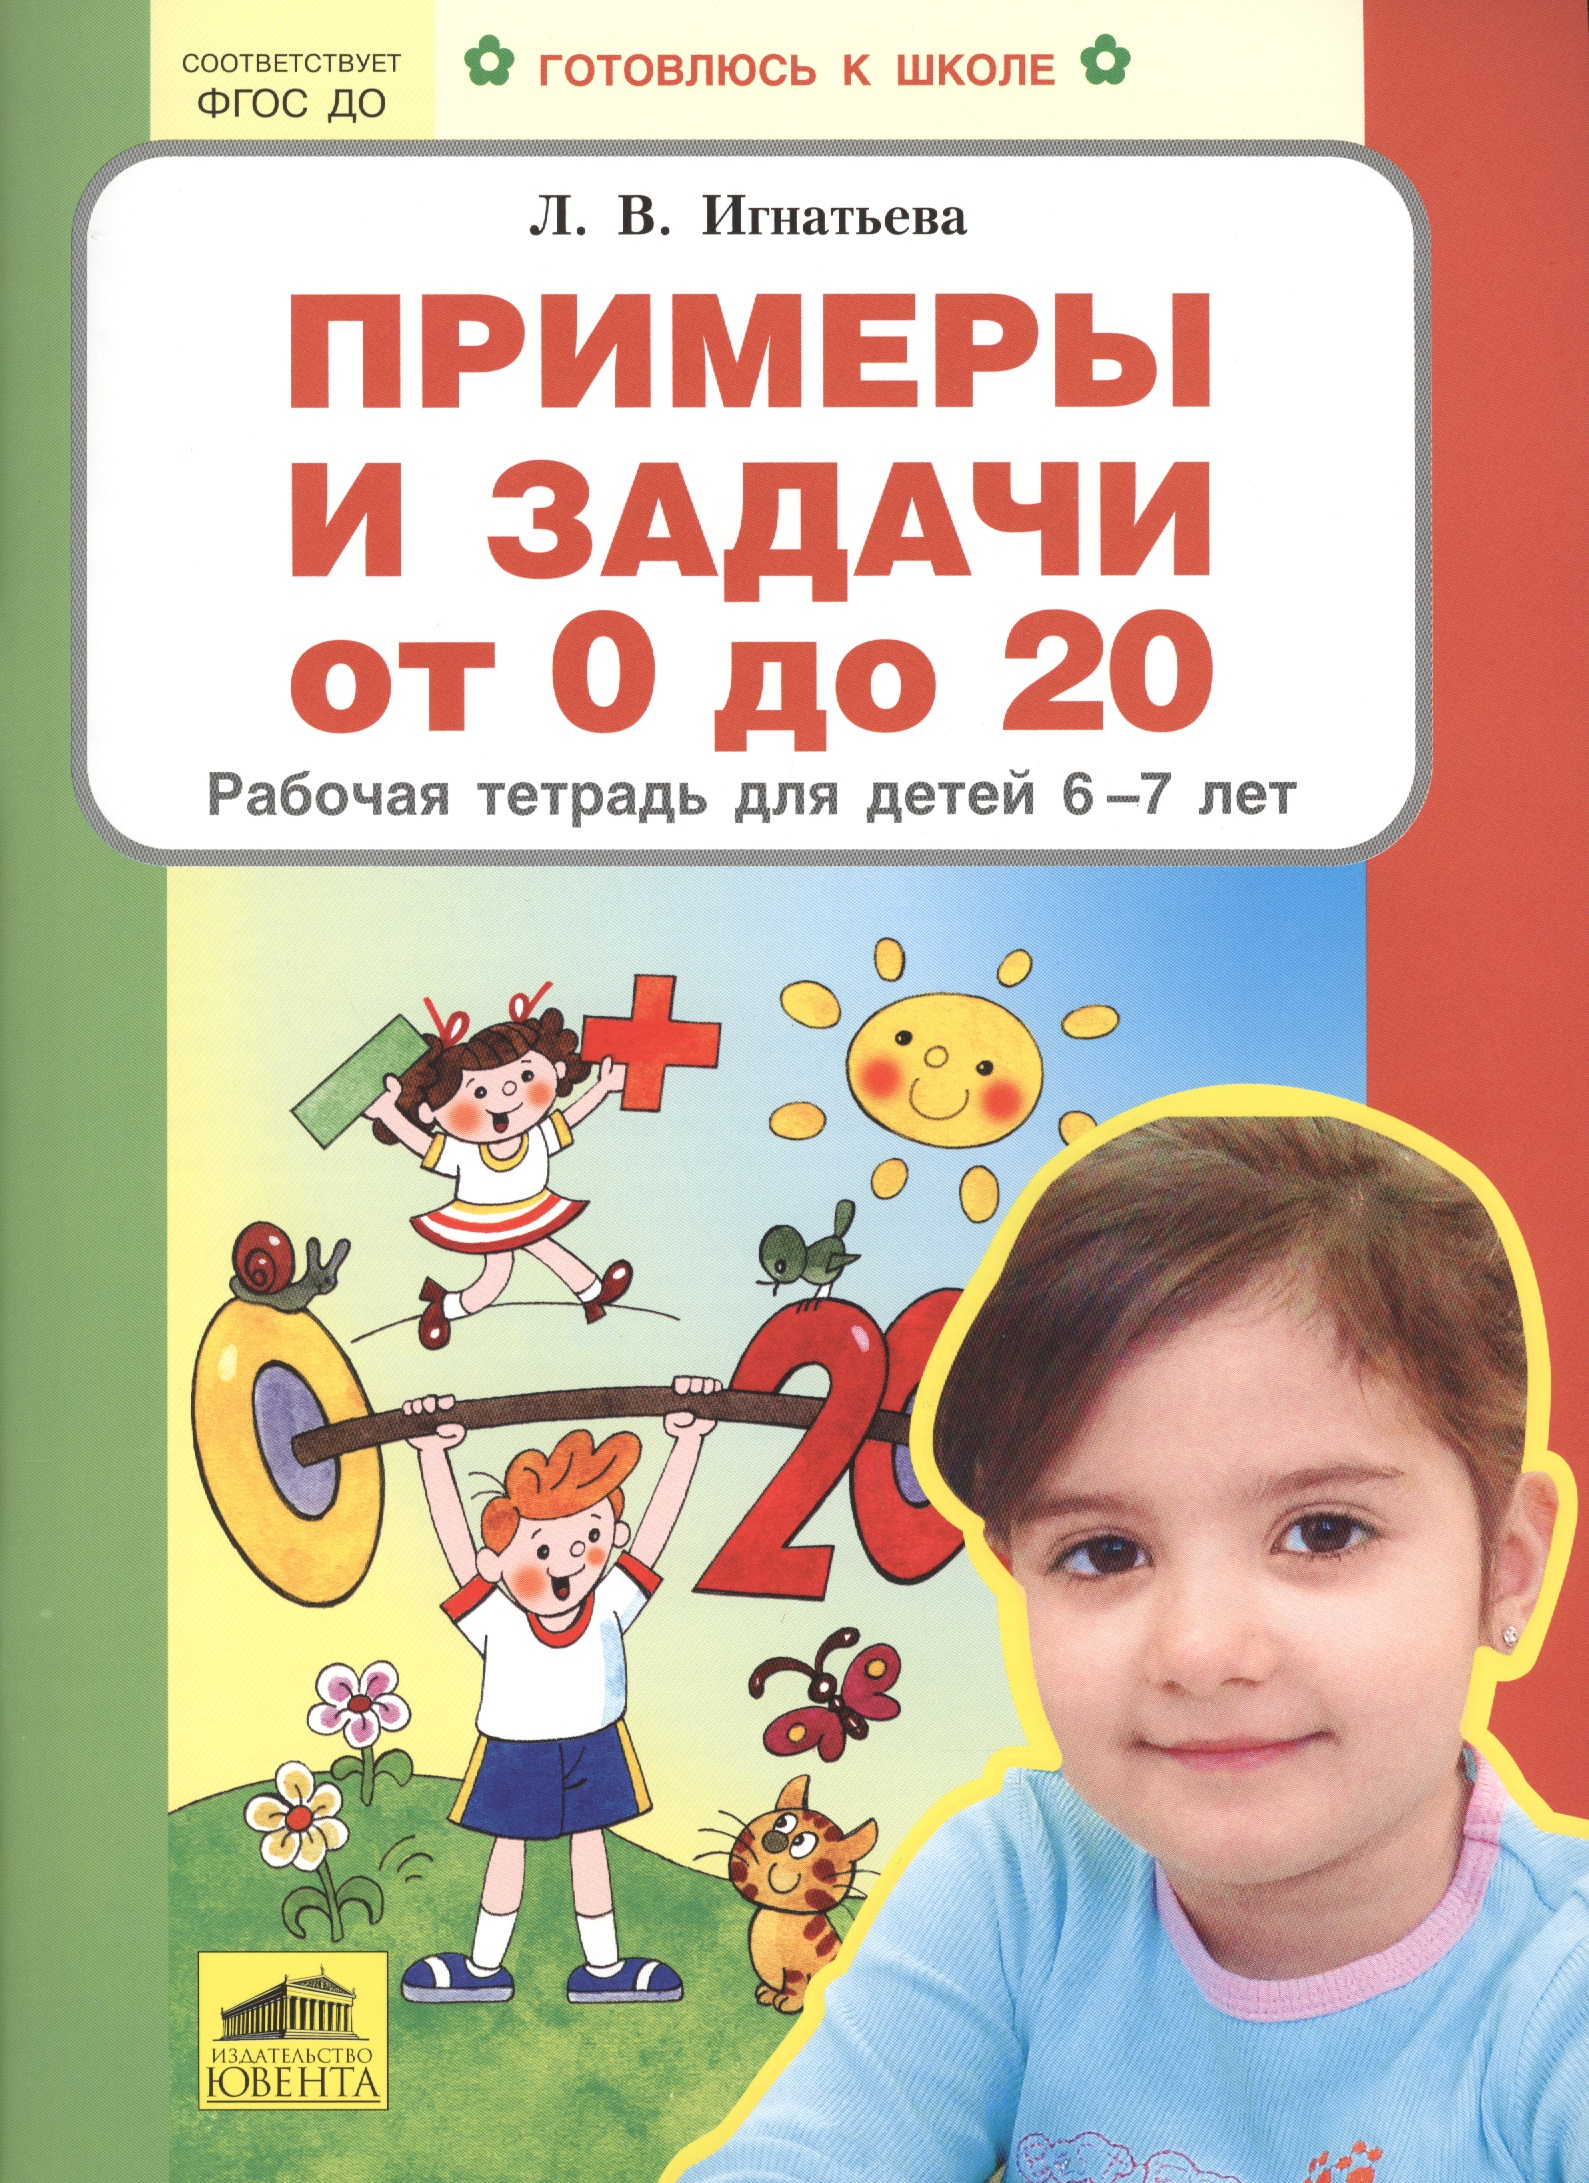 Примеры и задачи от 0 до 20 Р/т для детей (6-7) (мГкШ) Игнатьева (ФГОС ДО) примеры от 0 до 20